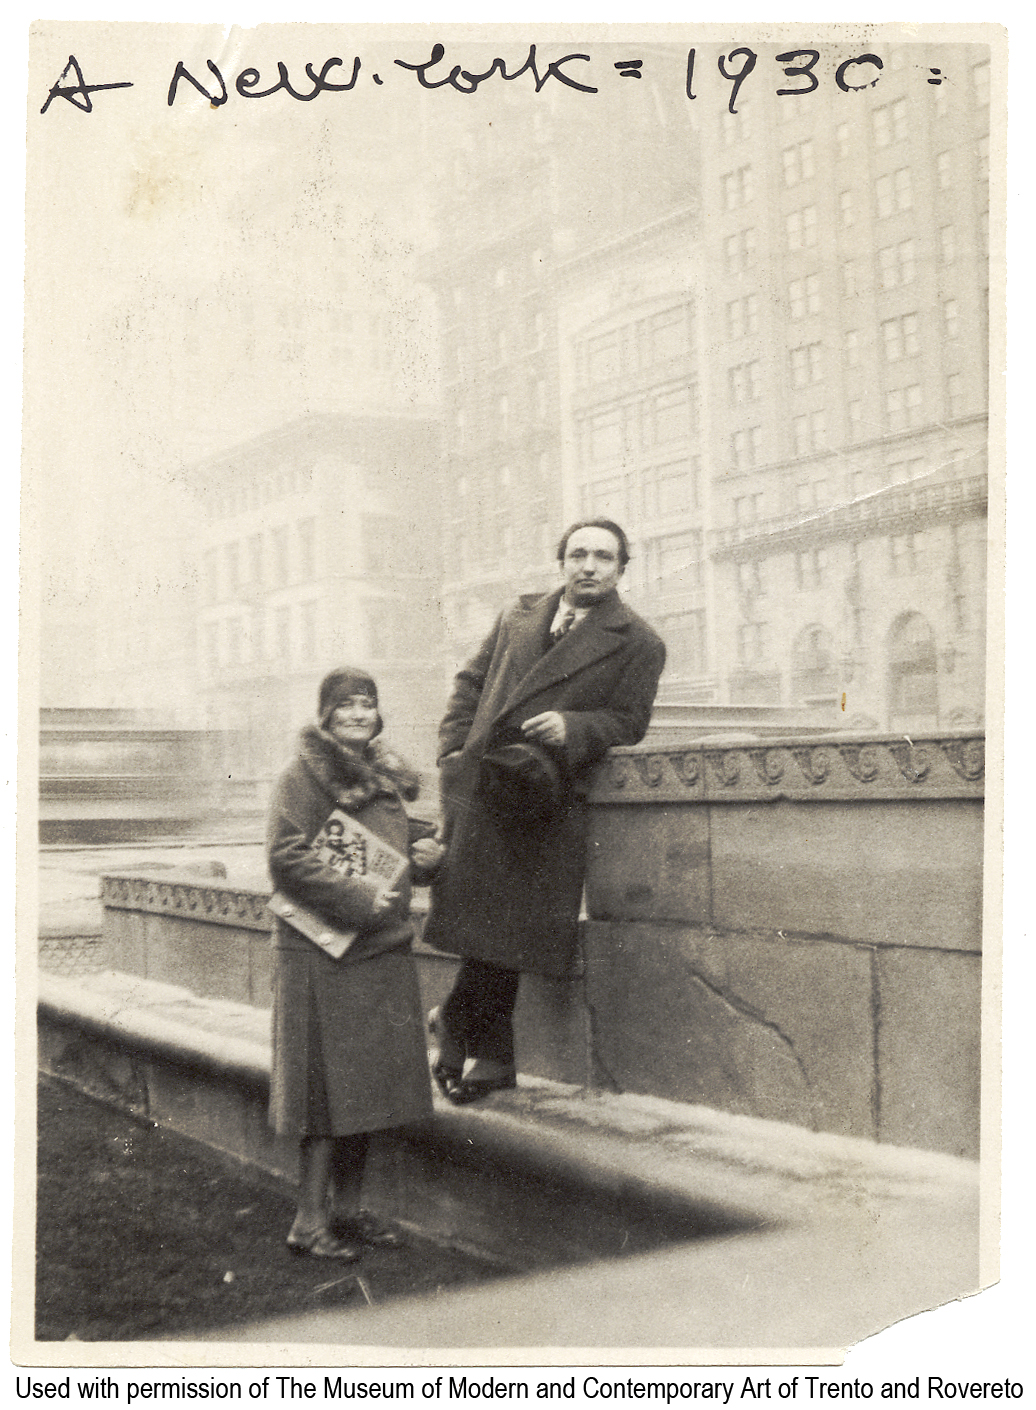 Dep.6.3.8 - «A New York - 1930». - New York, 1930. - 1 fotografia : b.n. ; 110 x 85 mm Pubblicato in: R. Antolini (a cura di), «Libri taglienti esplosivi e luminosi», 2005, p.134. Precedente segnatura Vol.850,|p.6  Sommario: Depero e Rosetta, con il libro imbullonato in mano, a New York sul tetto dell'Advertising Club in Park Avenue